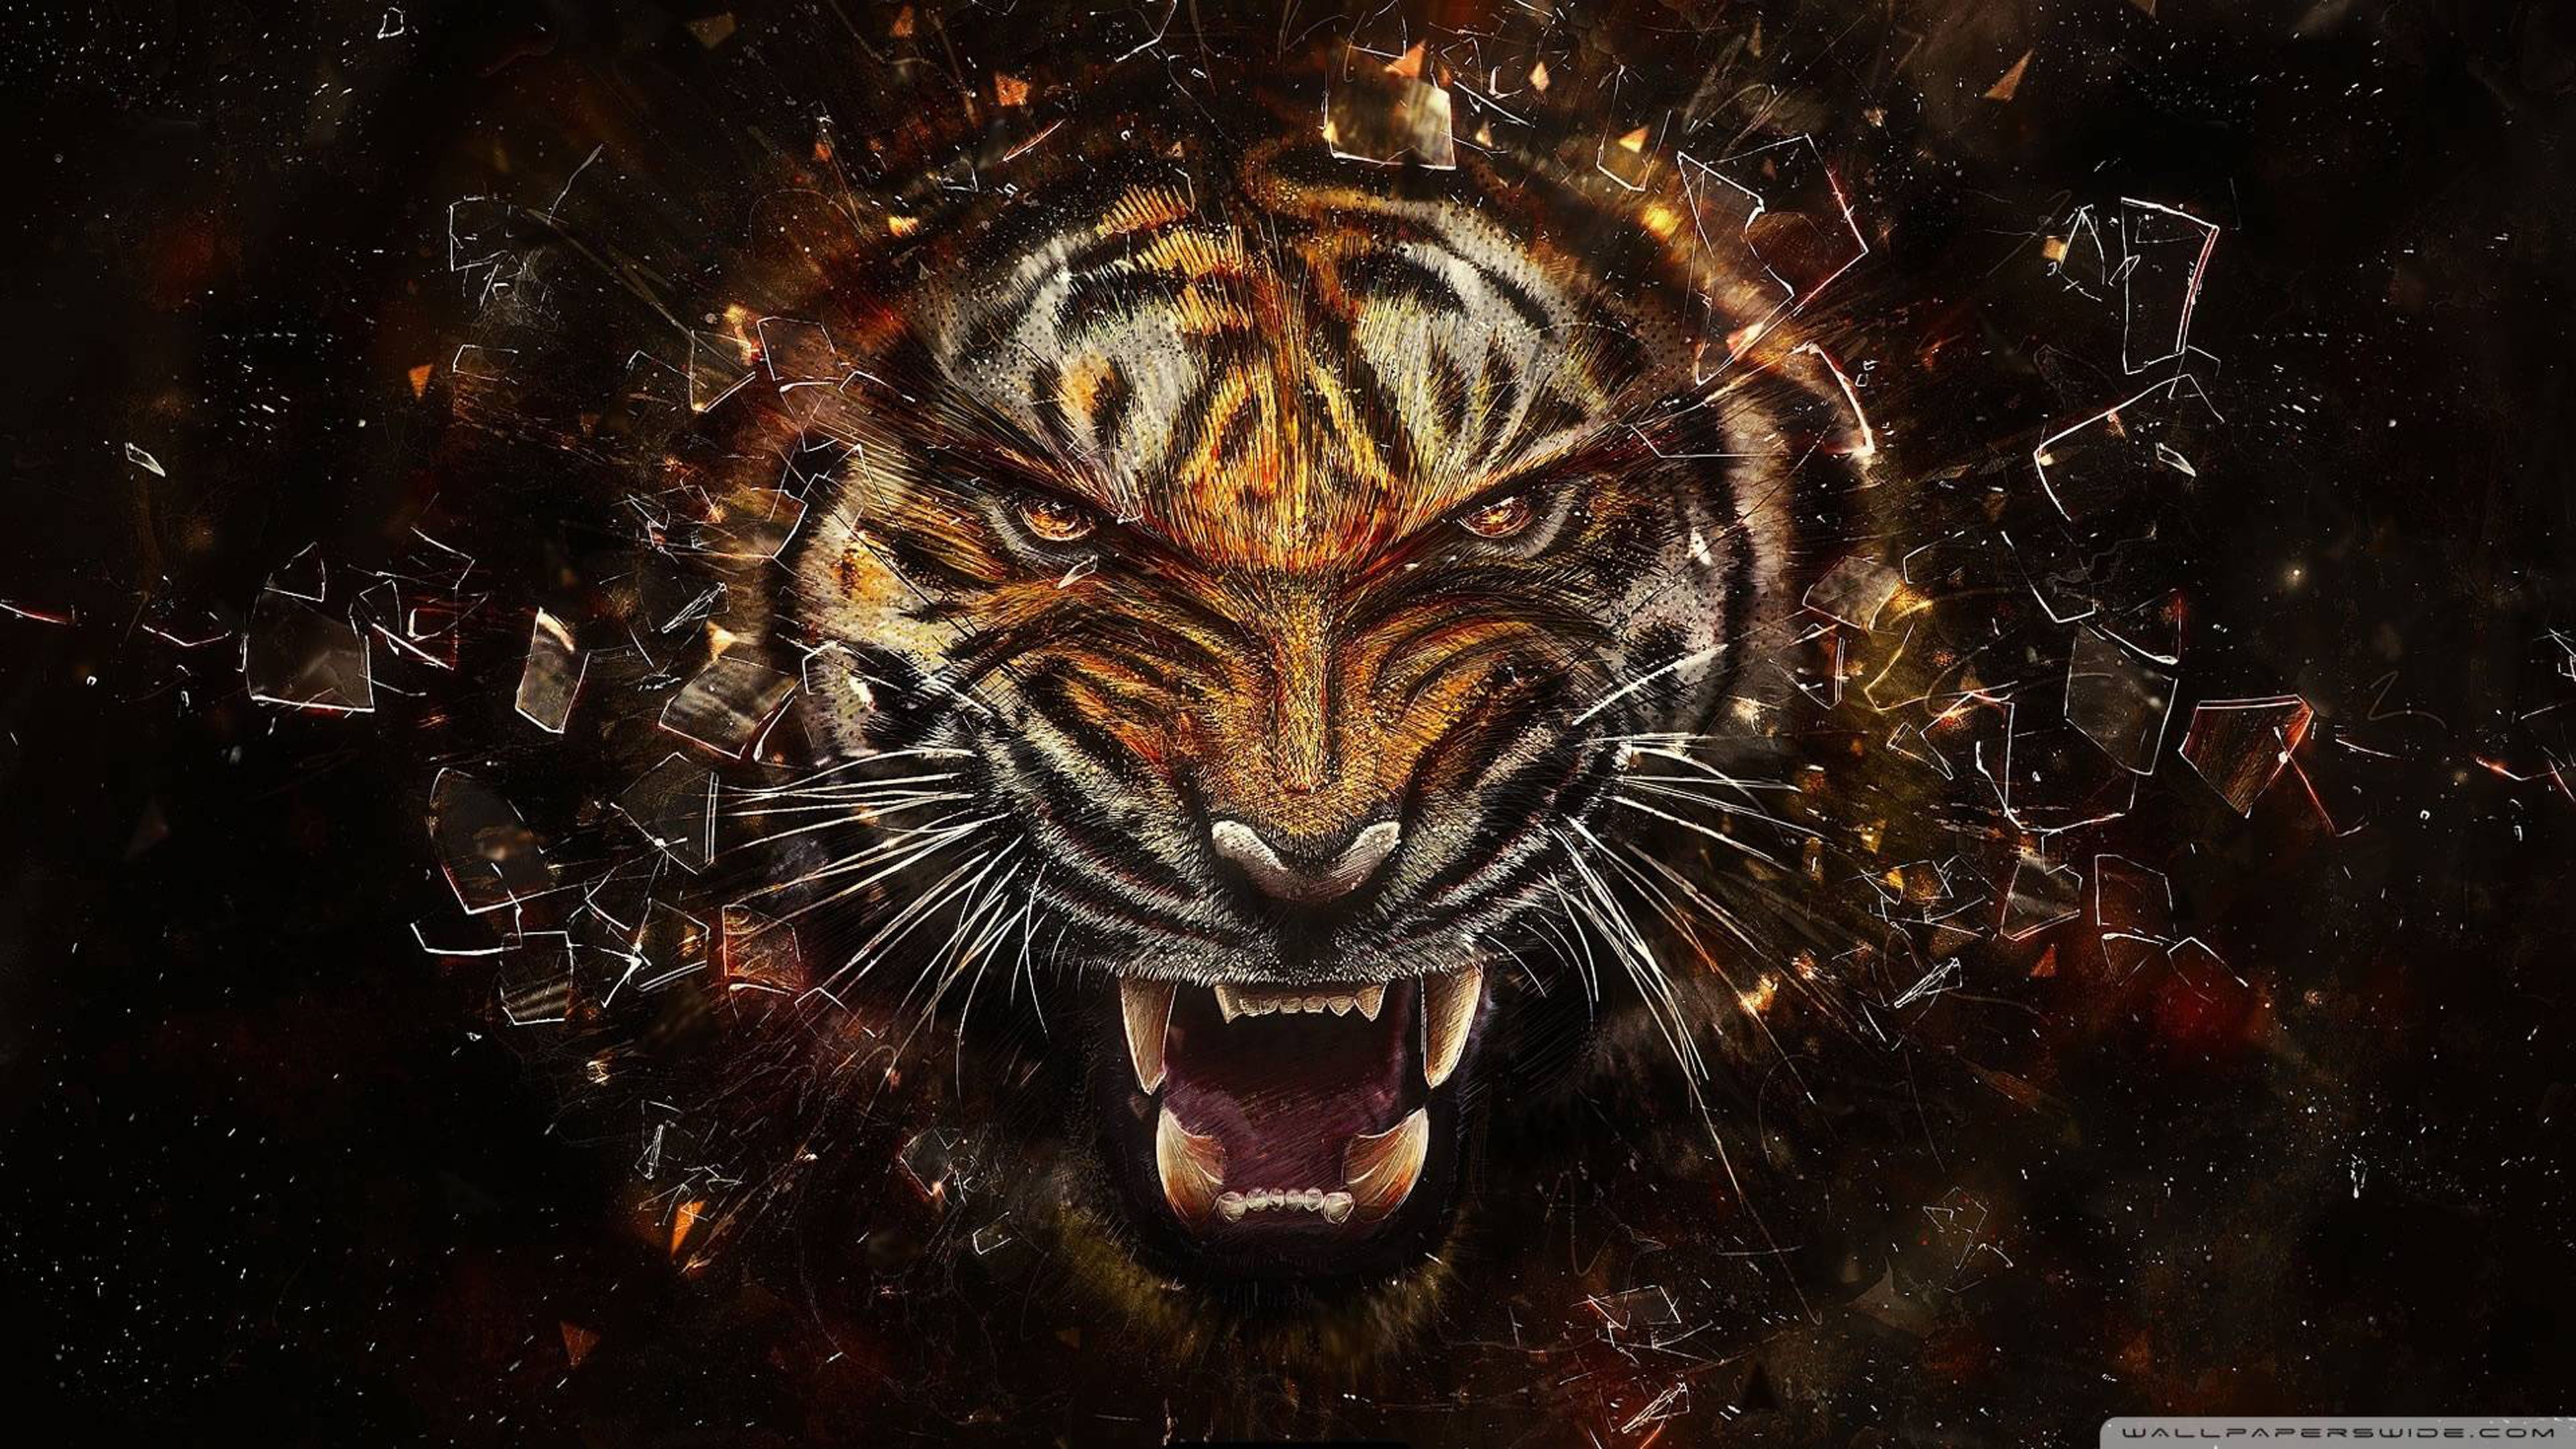 Roaring tiger ultra HD 4k wallpaper. Abstract. Tiger artwork